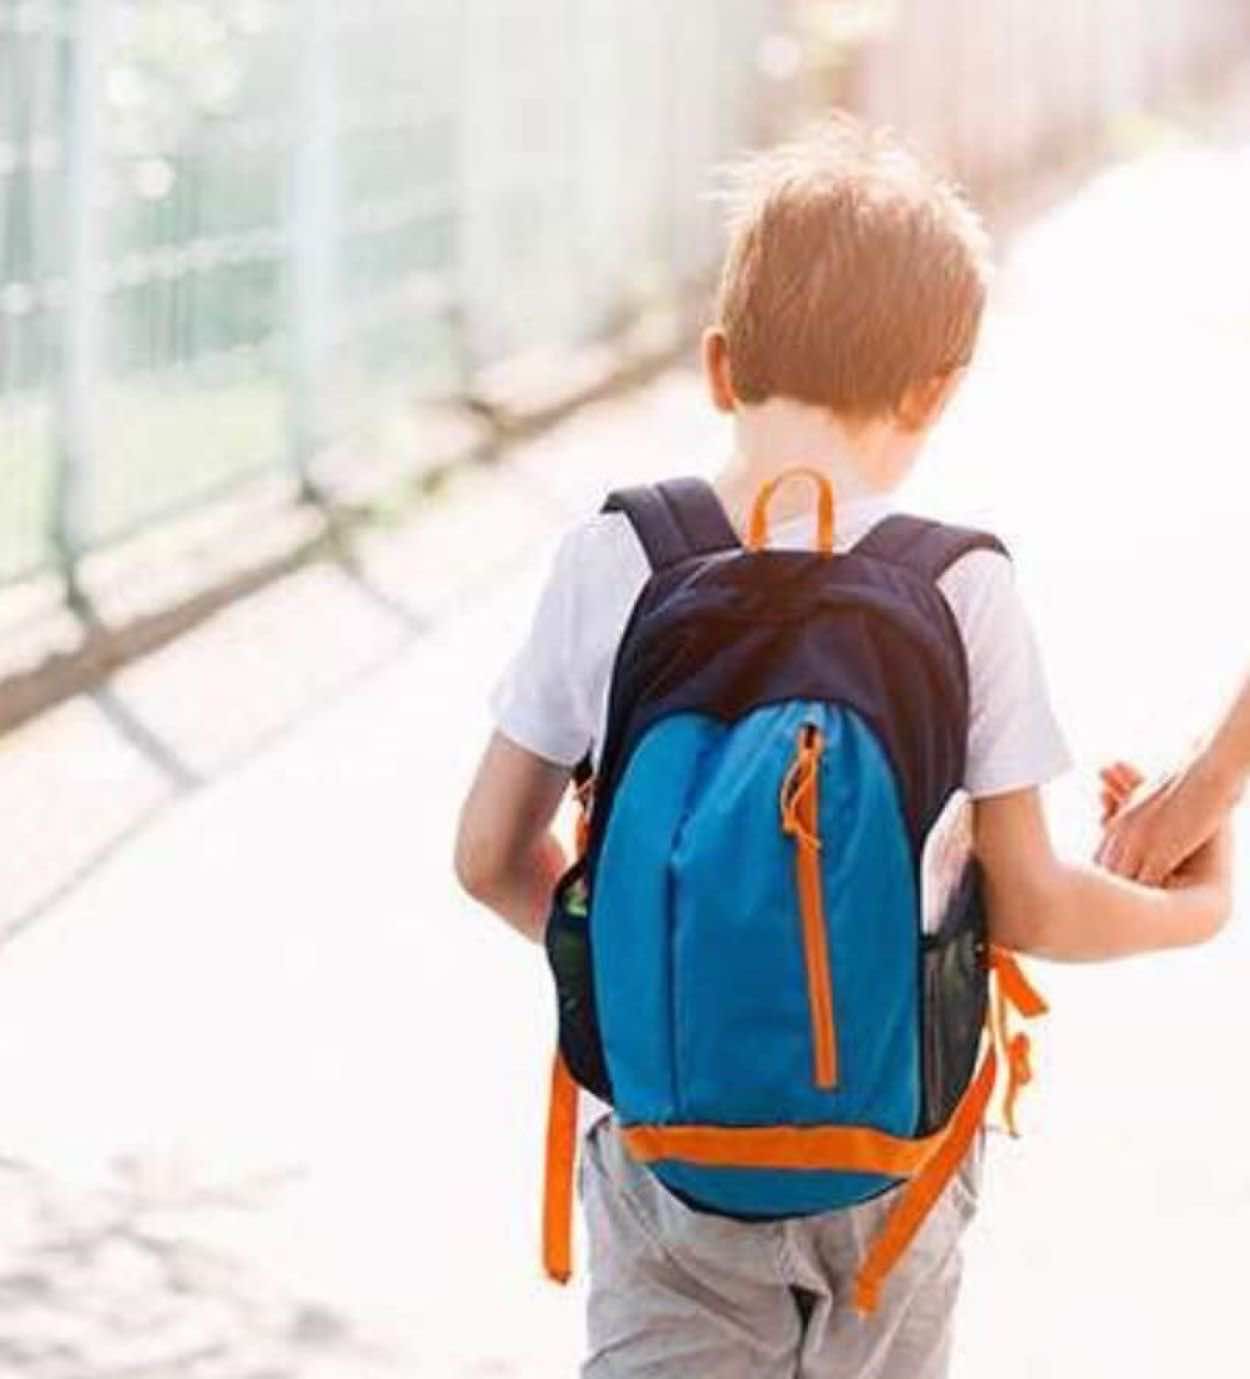 فيروس كورونا: هل أسمح لطفلي بالعودة إلى مدرسته؟